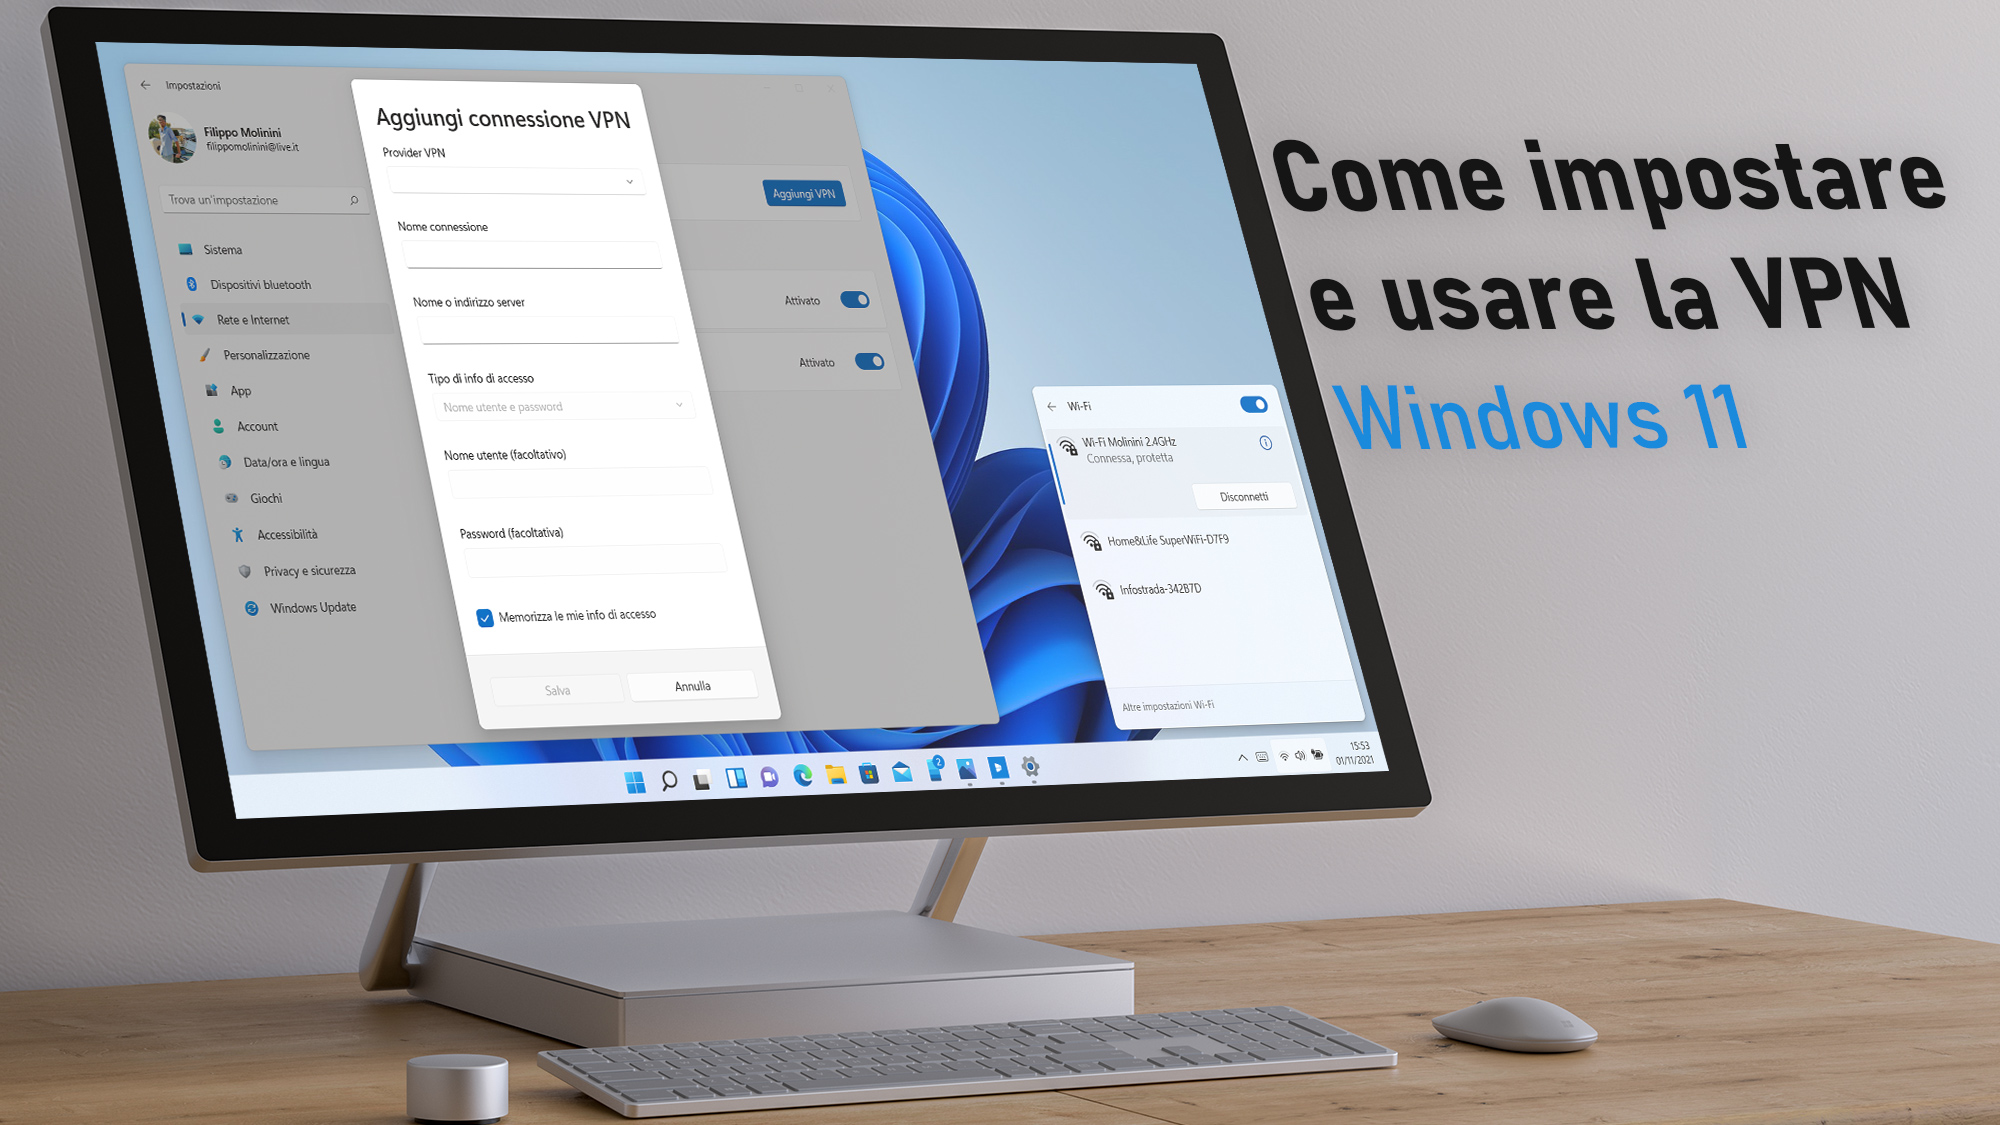 Windows 11 - Come impostare e usare la VPN